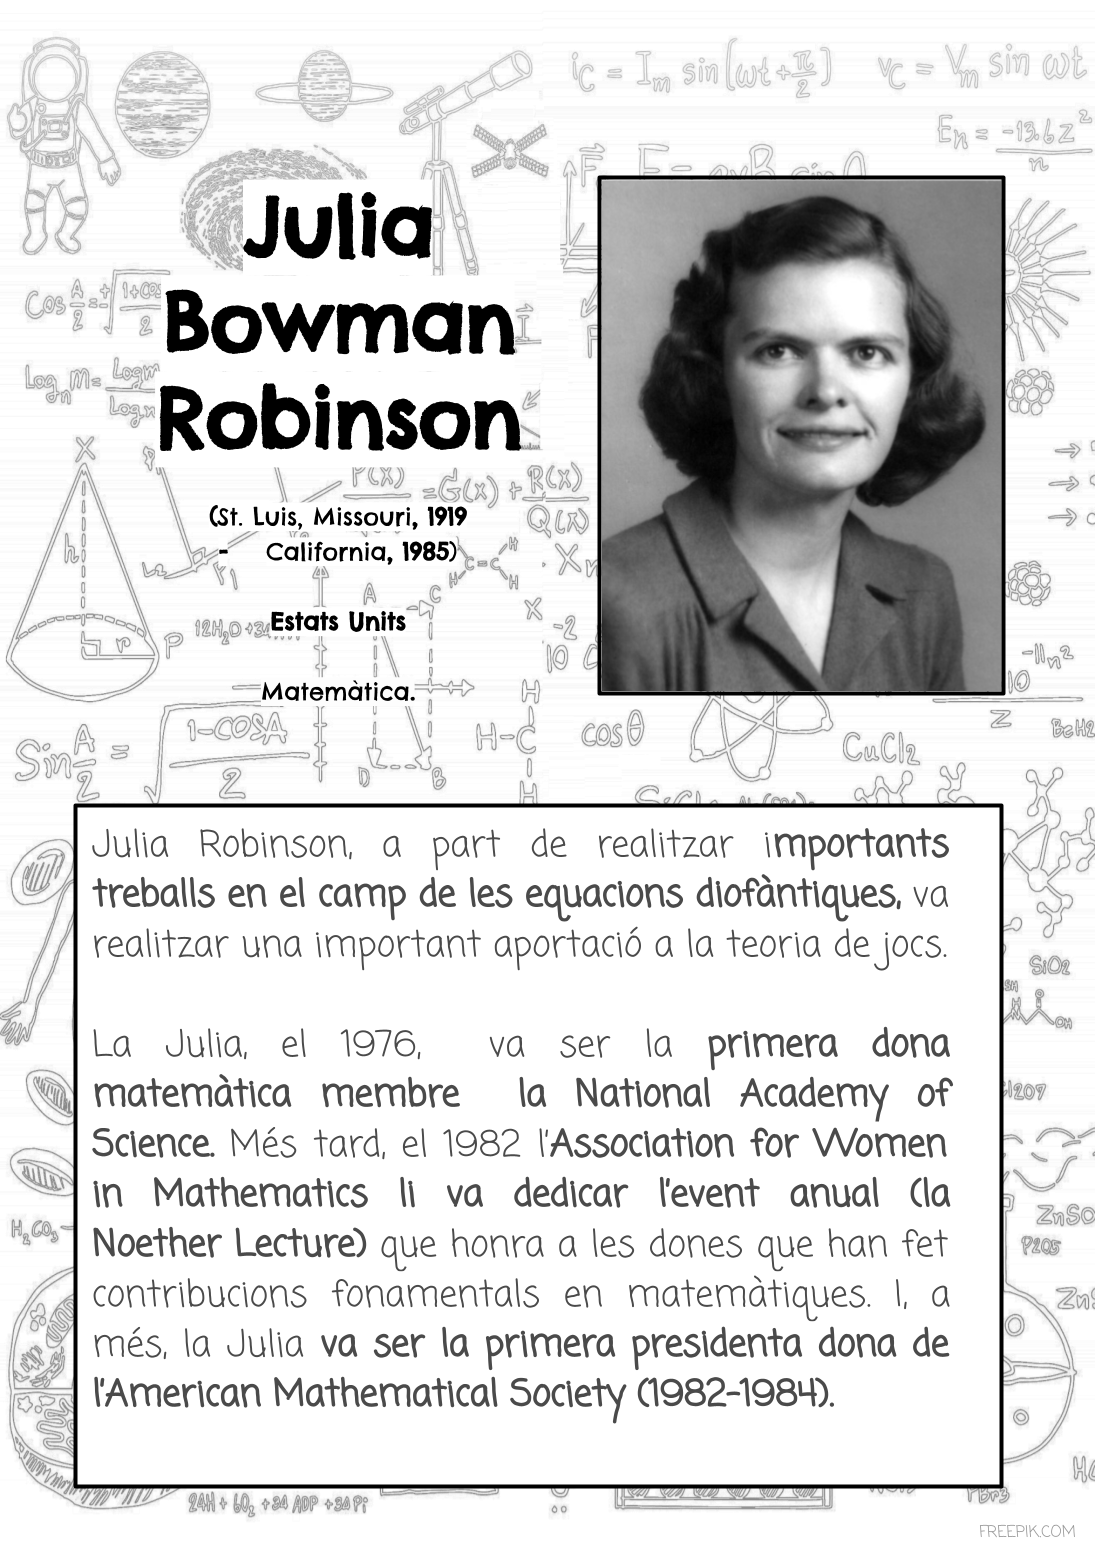 Julia Bowman Robinson